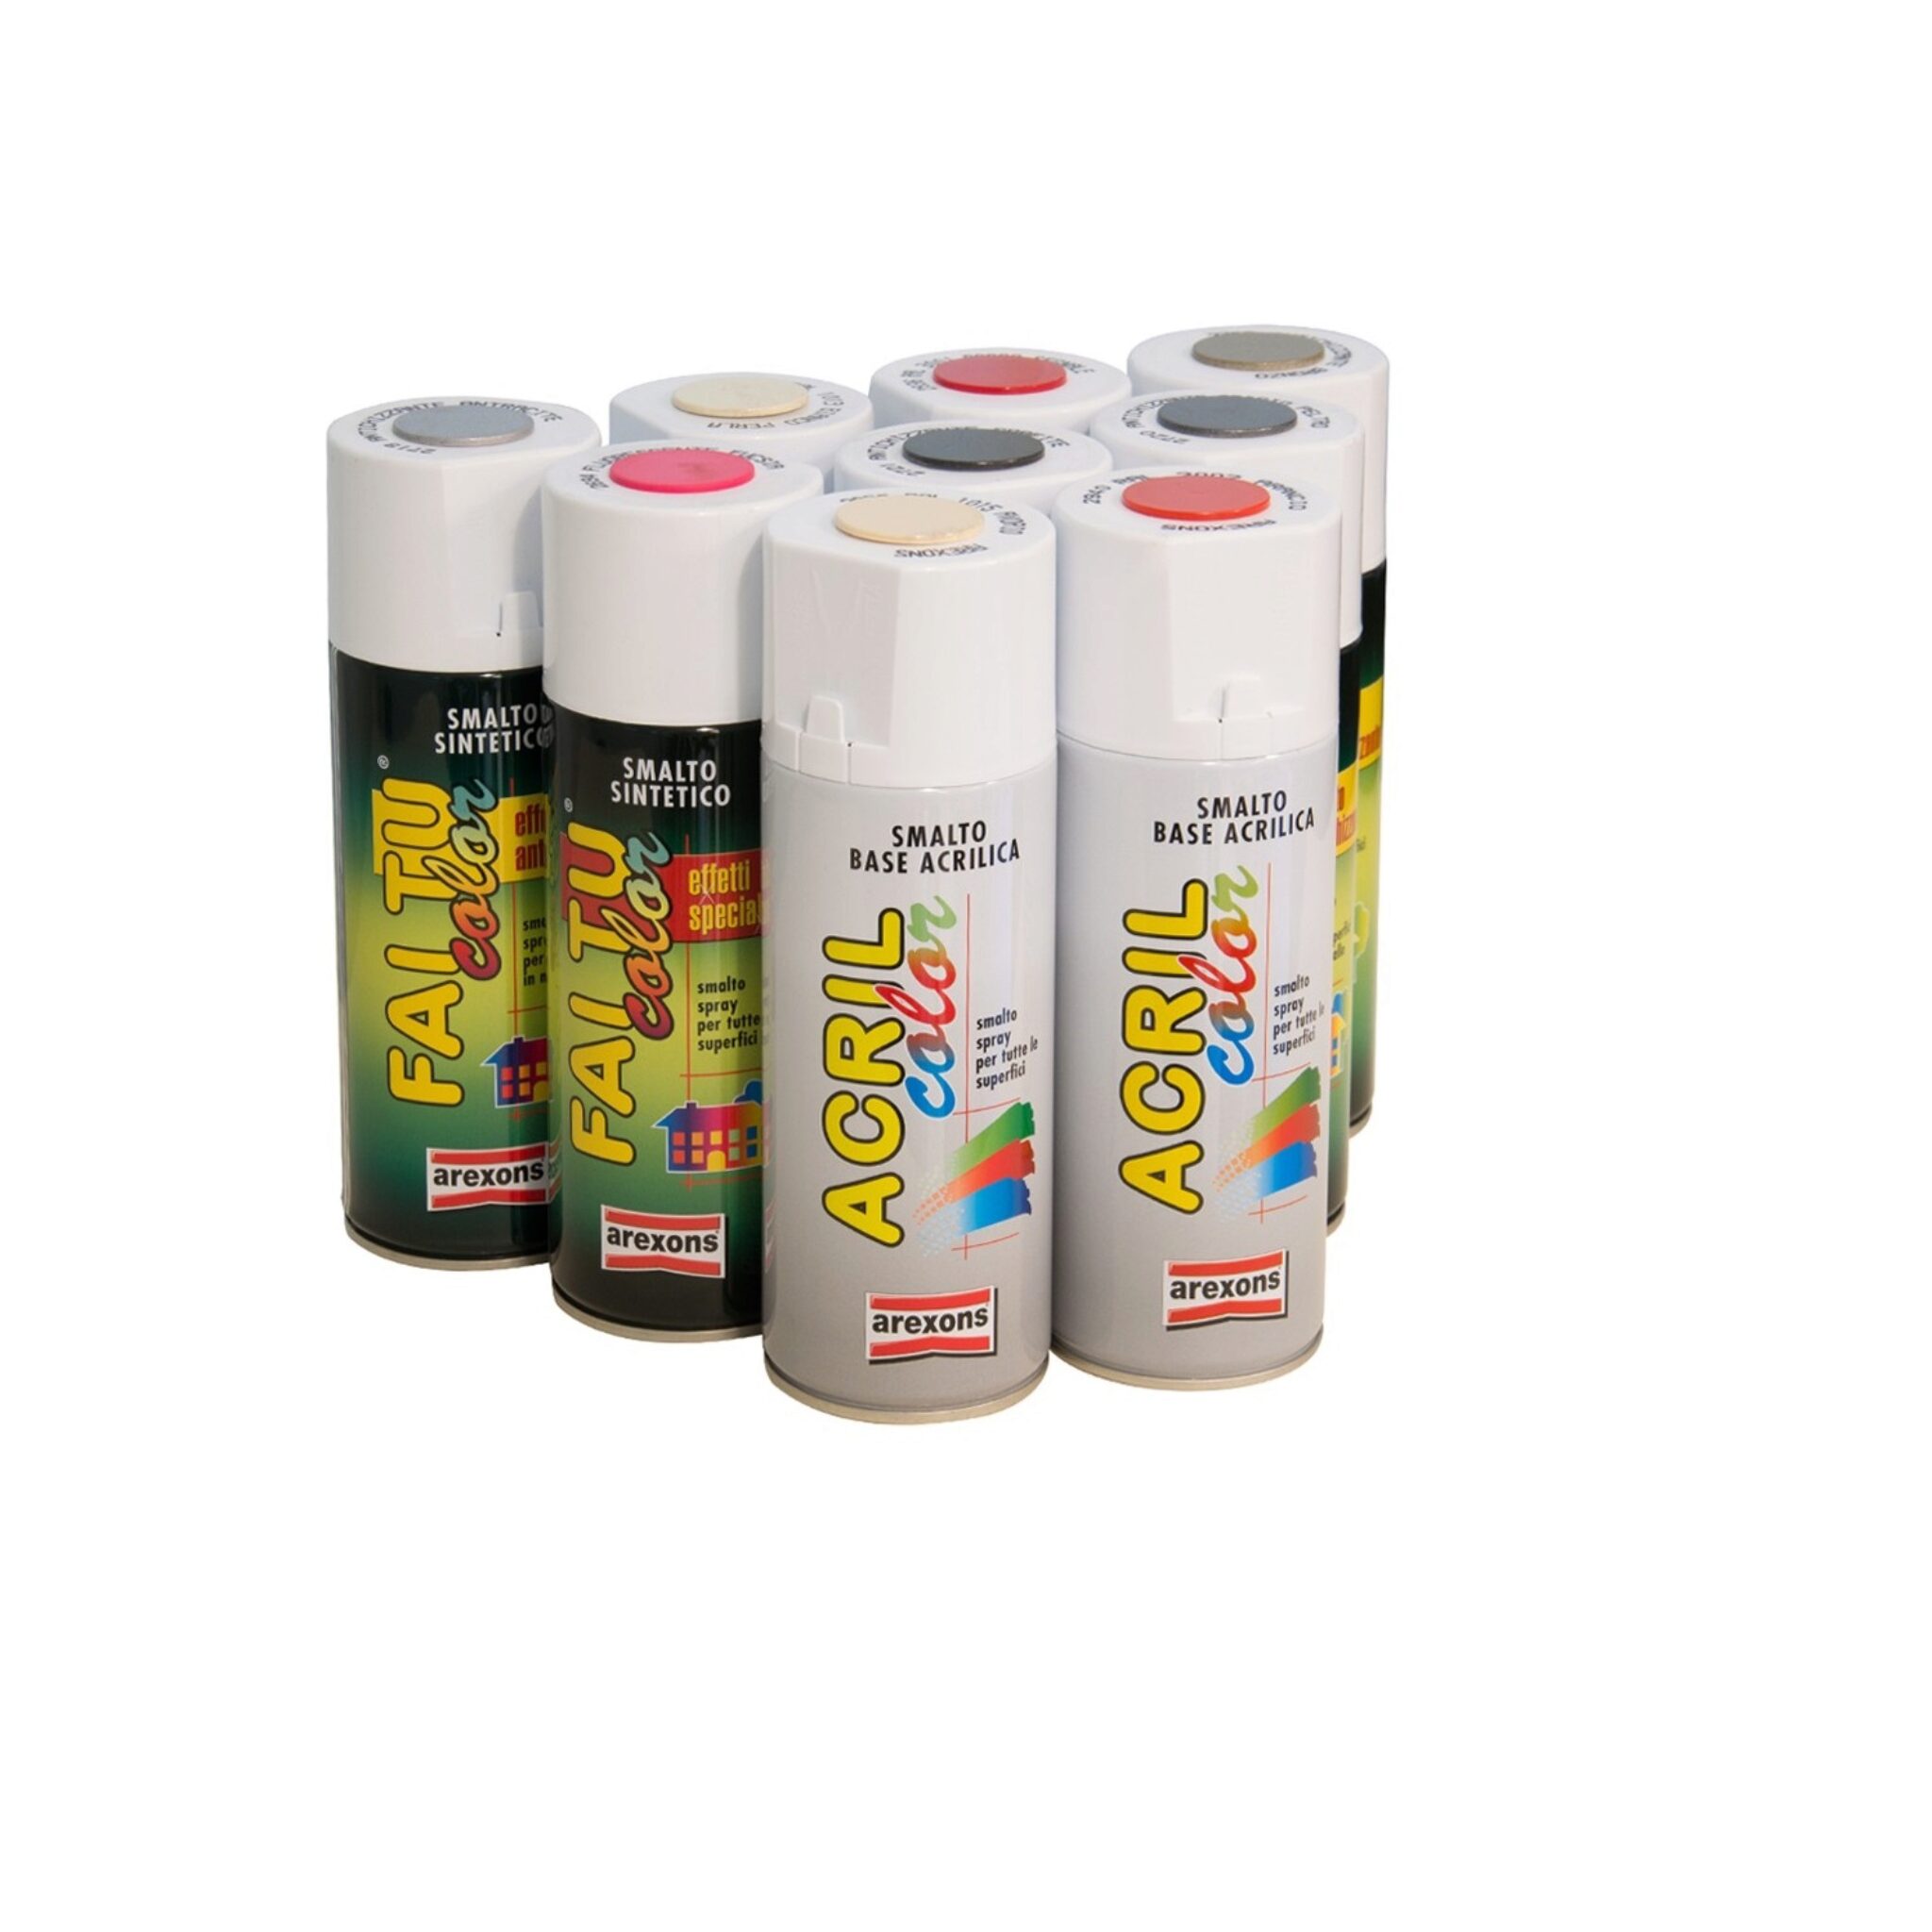 25 Migliori Vernici Spray Per Legno, Plastica, Metallo, Vetro E Vinile